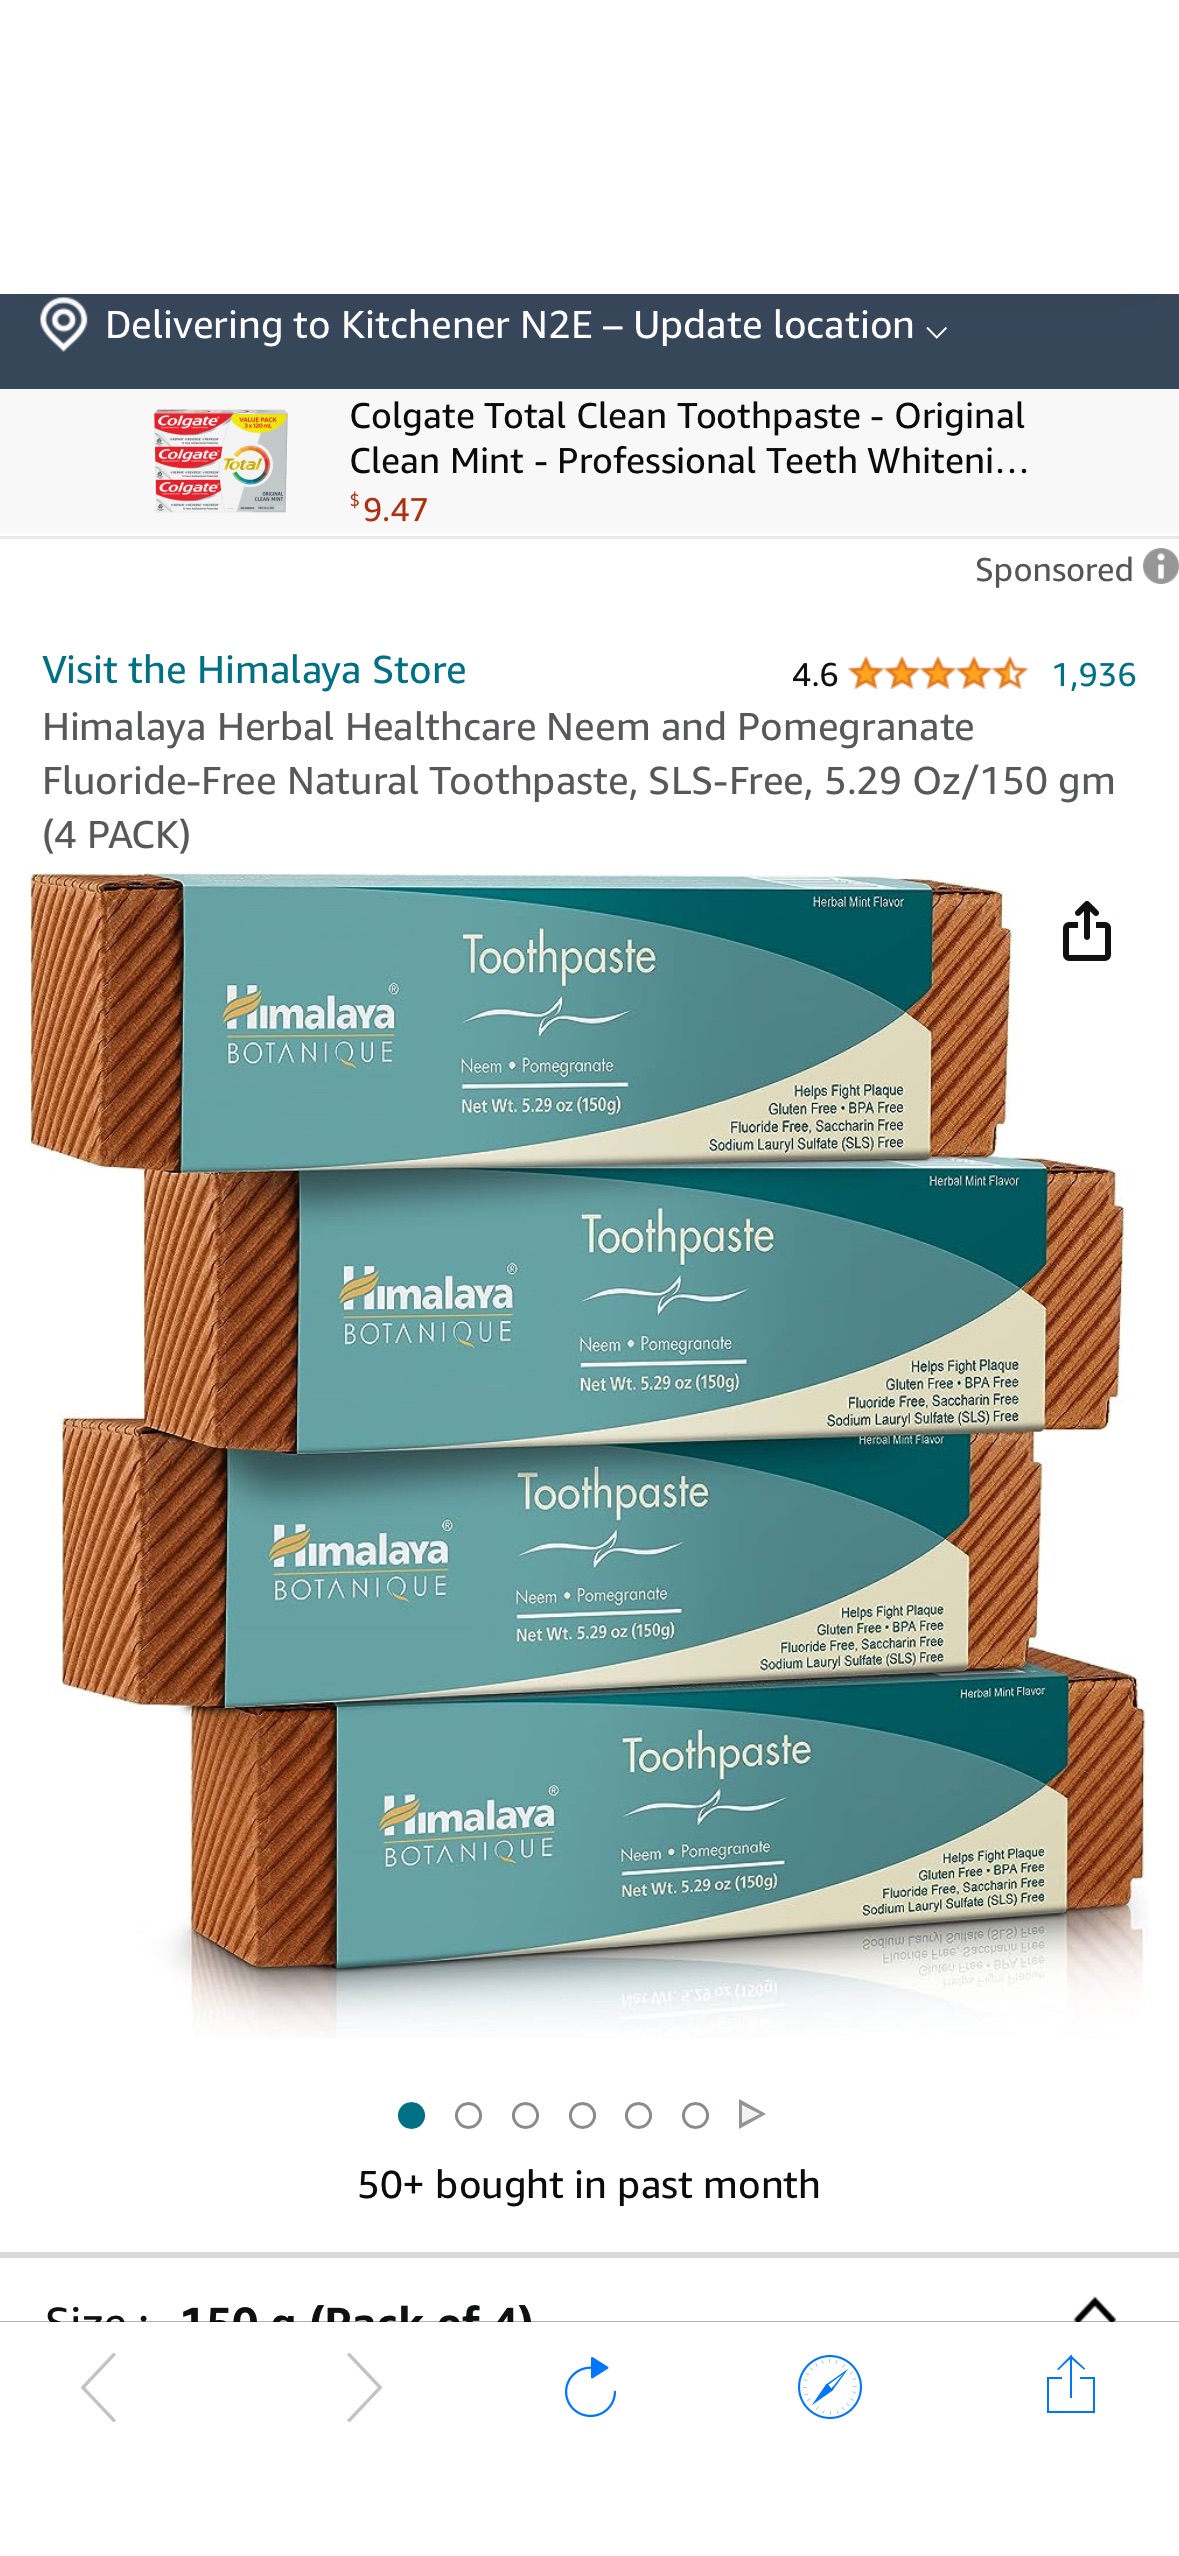 1930年成立的企业，高端。4件套Himalaya Herbal Healthcare Neem and Pomegranate Fluoride-Free Natural Toothpaste, SLS-Free, 5.29 Oz/150 gm (4 PACK) : Amazon.ca: Health & Personal Care